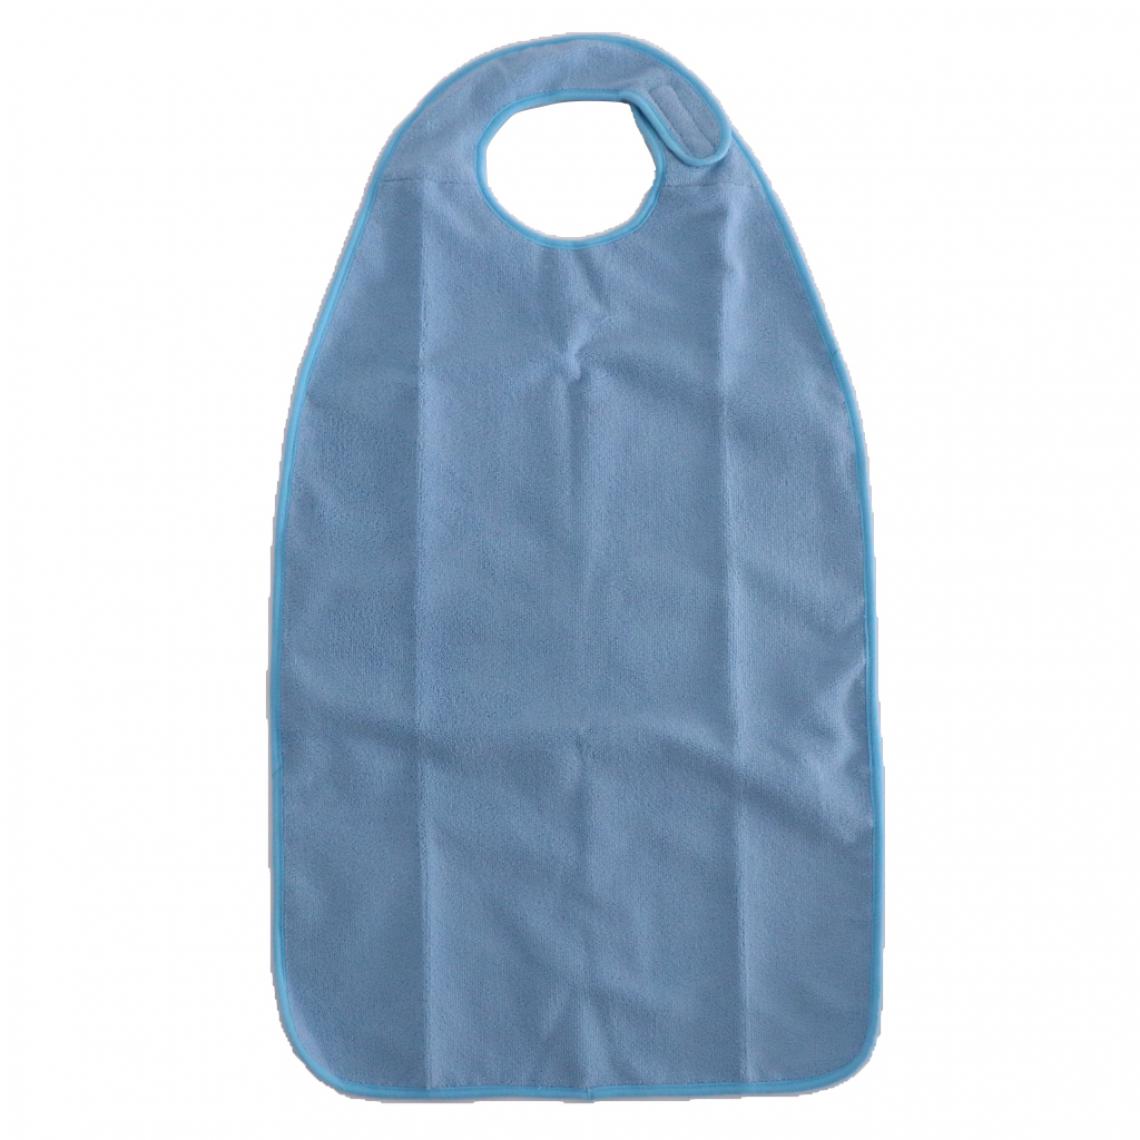 marque generique - imperméable adulte tissu éponge repas bavoir invalidité tablier lavable bleu - Autre appareil de mesure